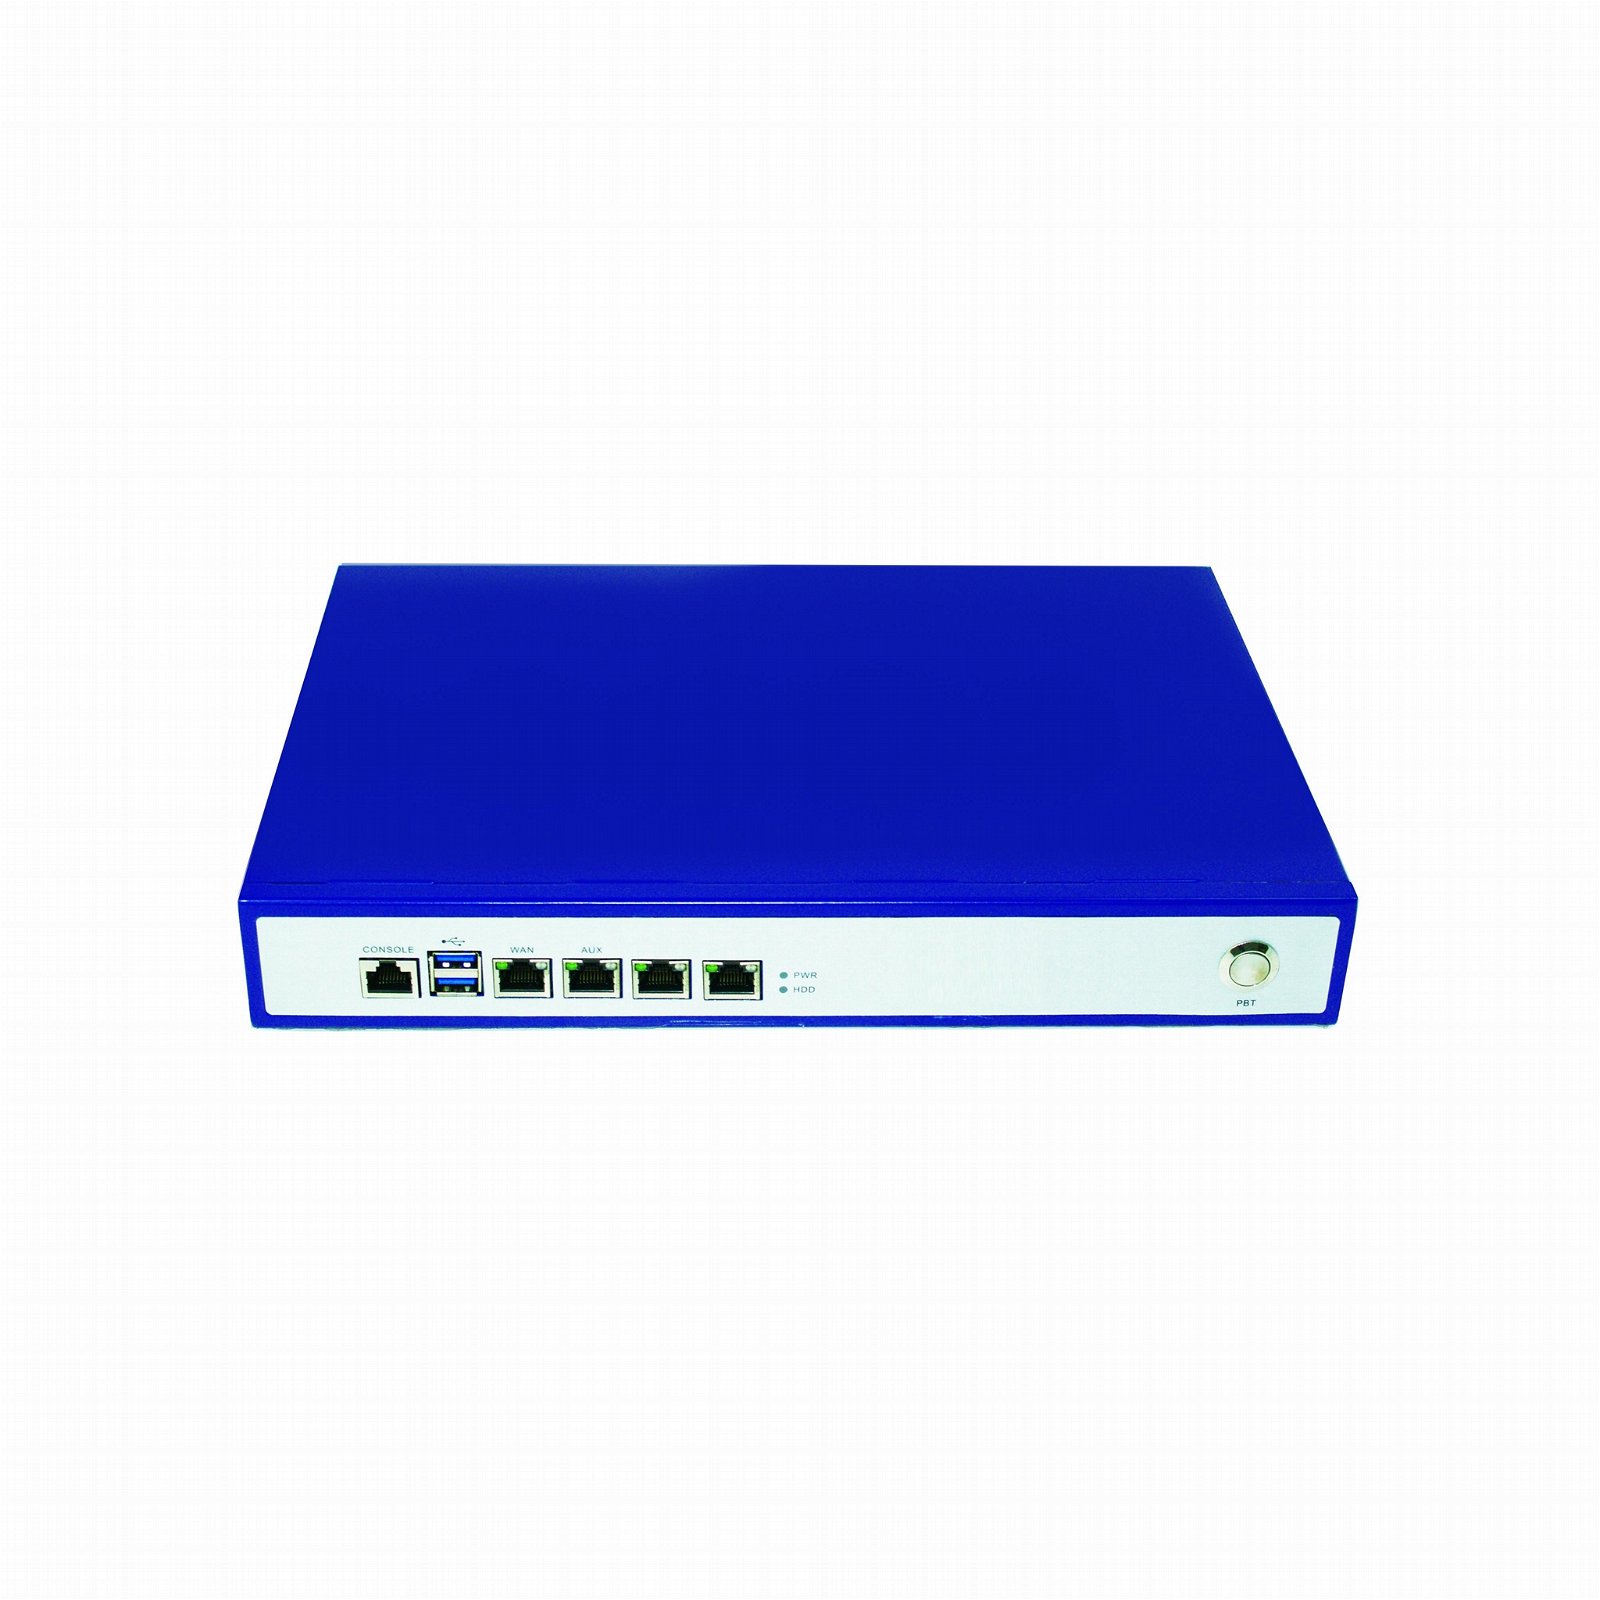 桌面型网络安全硬件平台用于VPN防火墙F19401 3